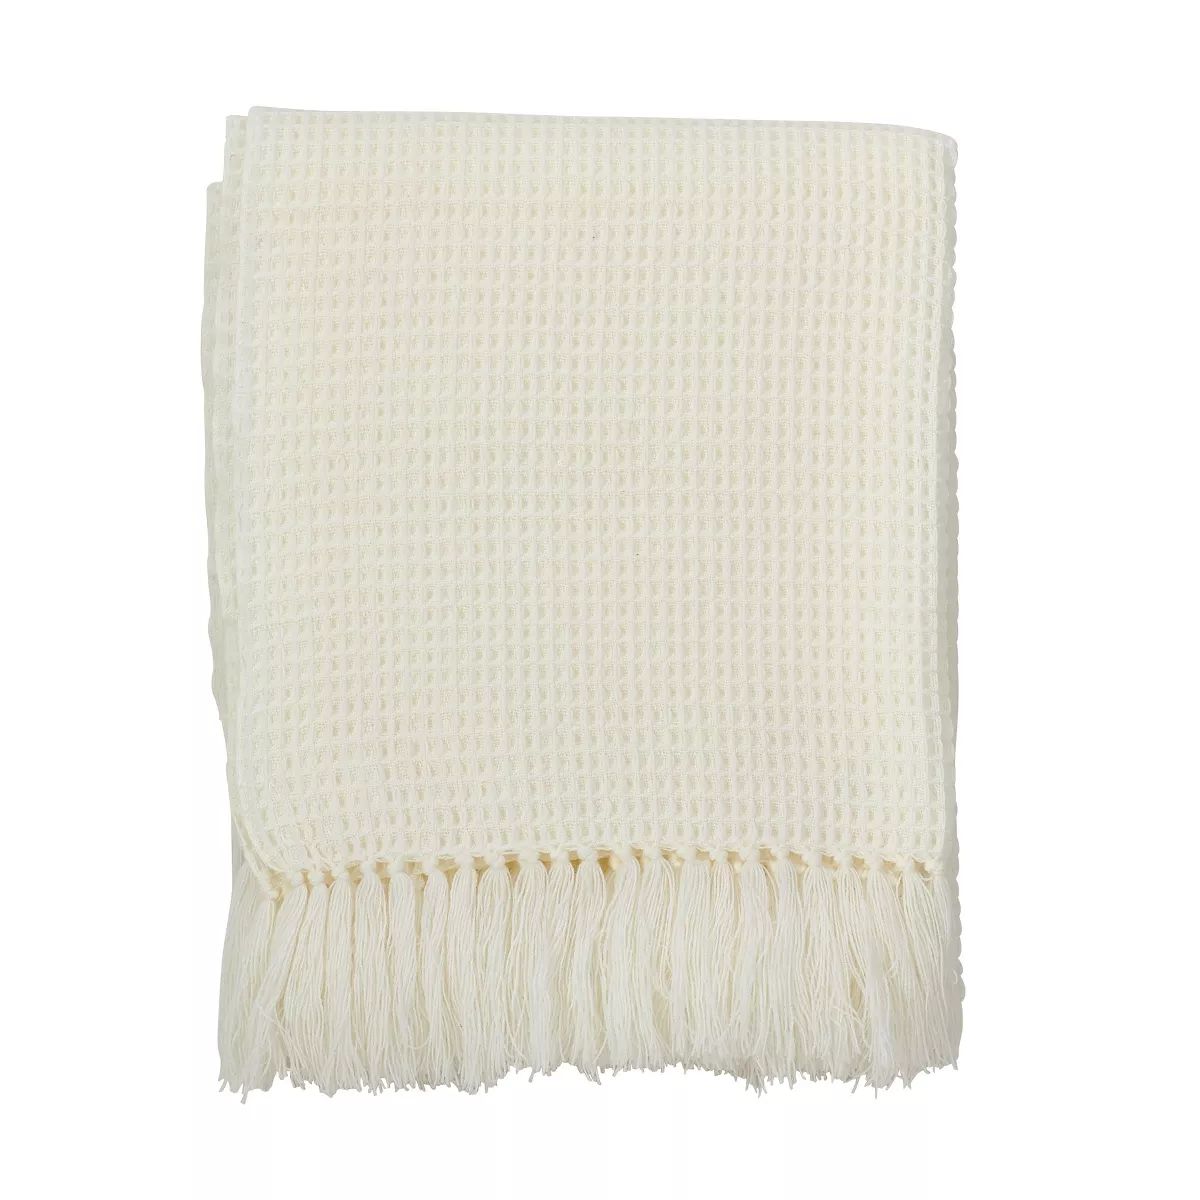 50"x60" Throw Blanket Off White - Saro Lifestyle | Target